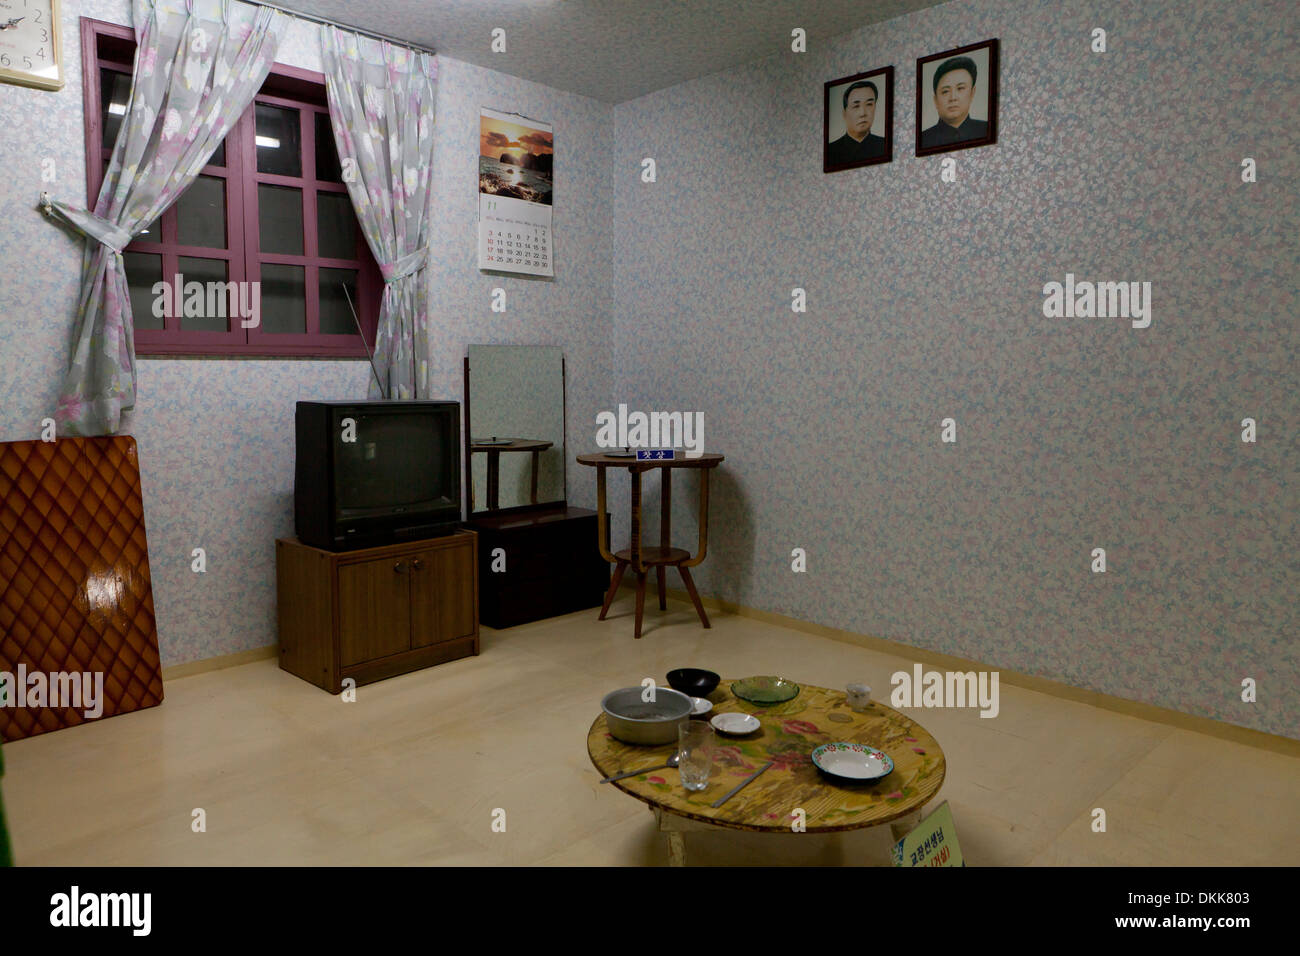 Maqueta del interior de la casa de la familia norcoreana que muestra retratos de Kim Il Sung y Kim Jong Il en la pared Foto de stock